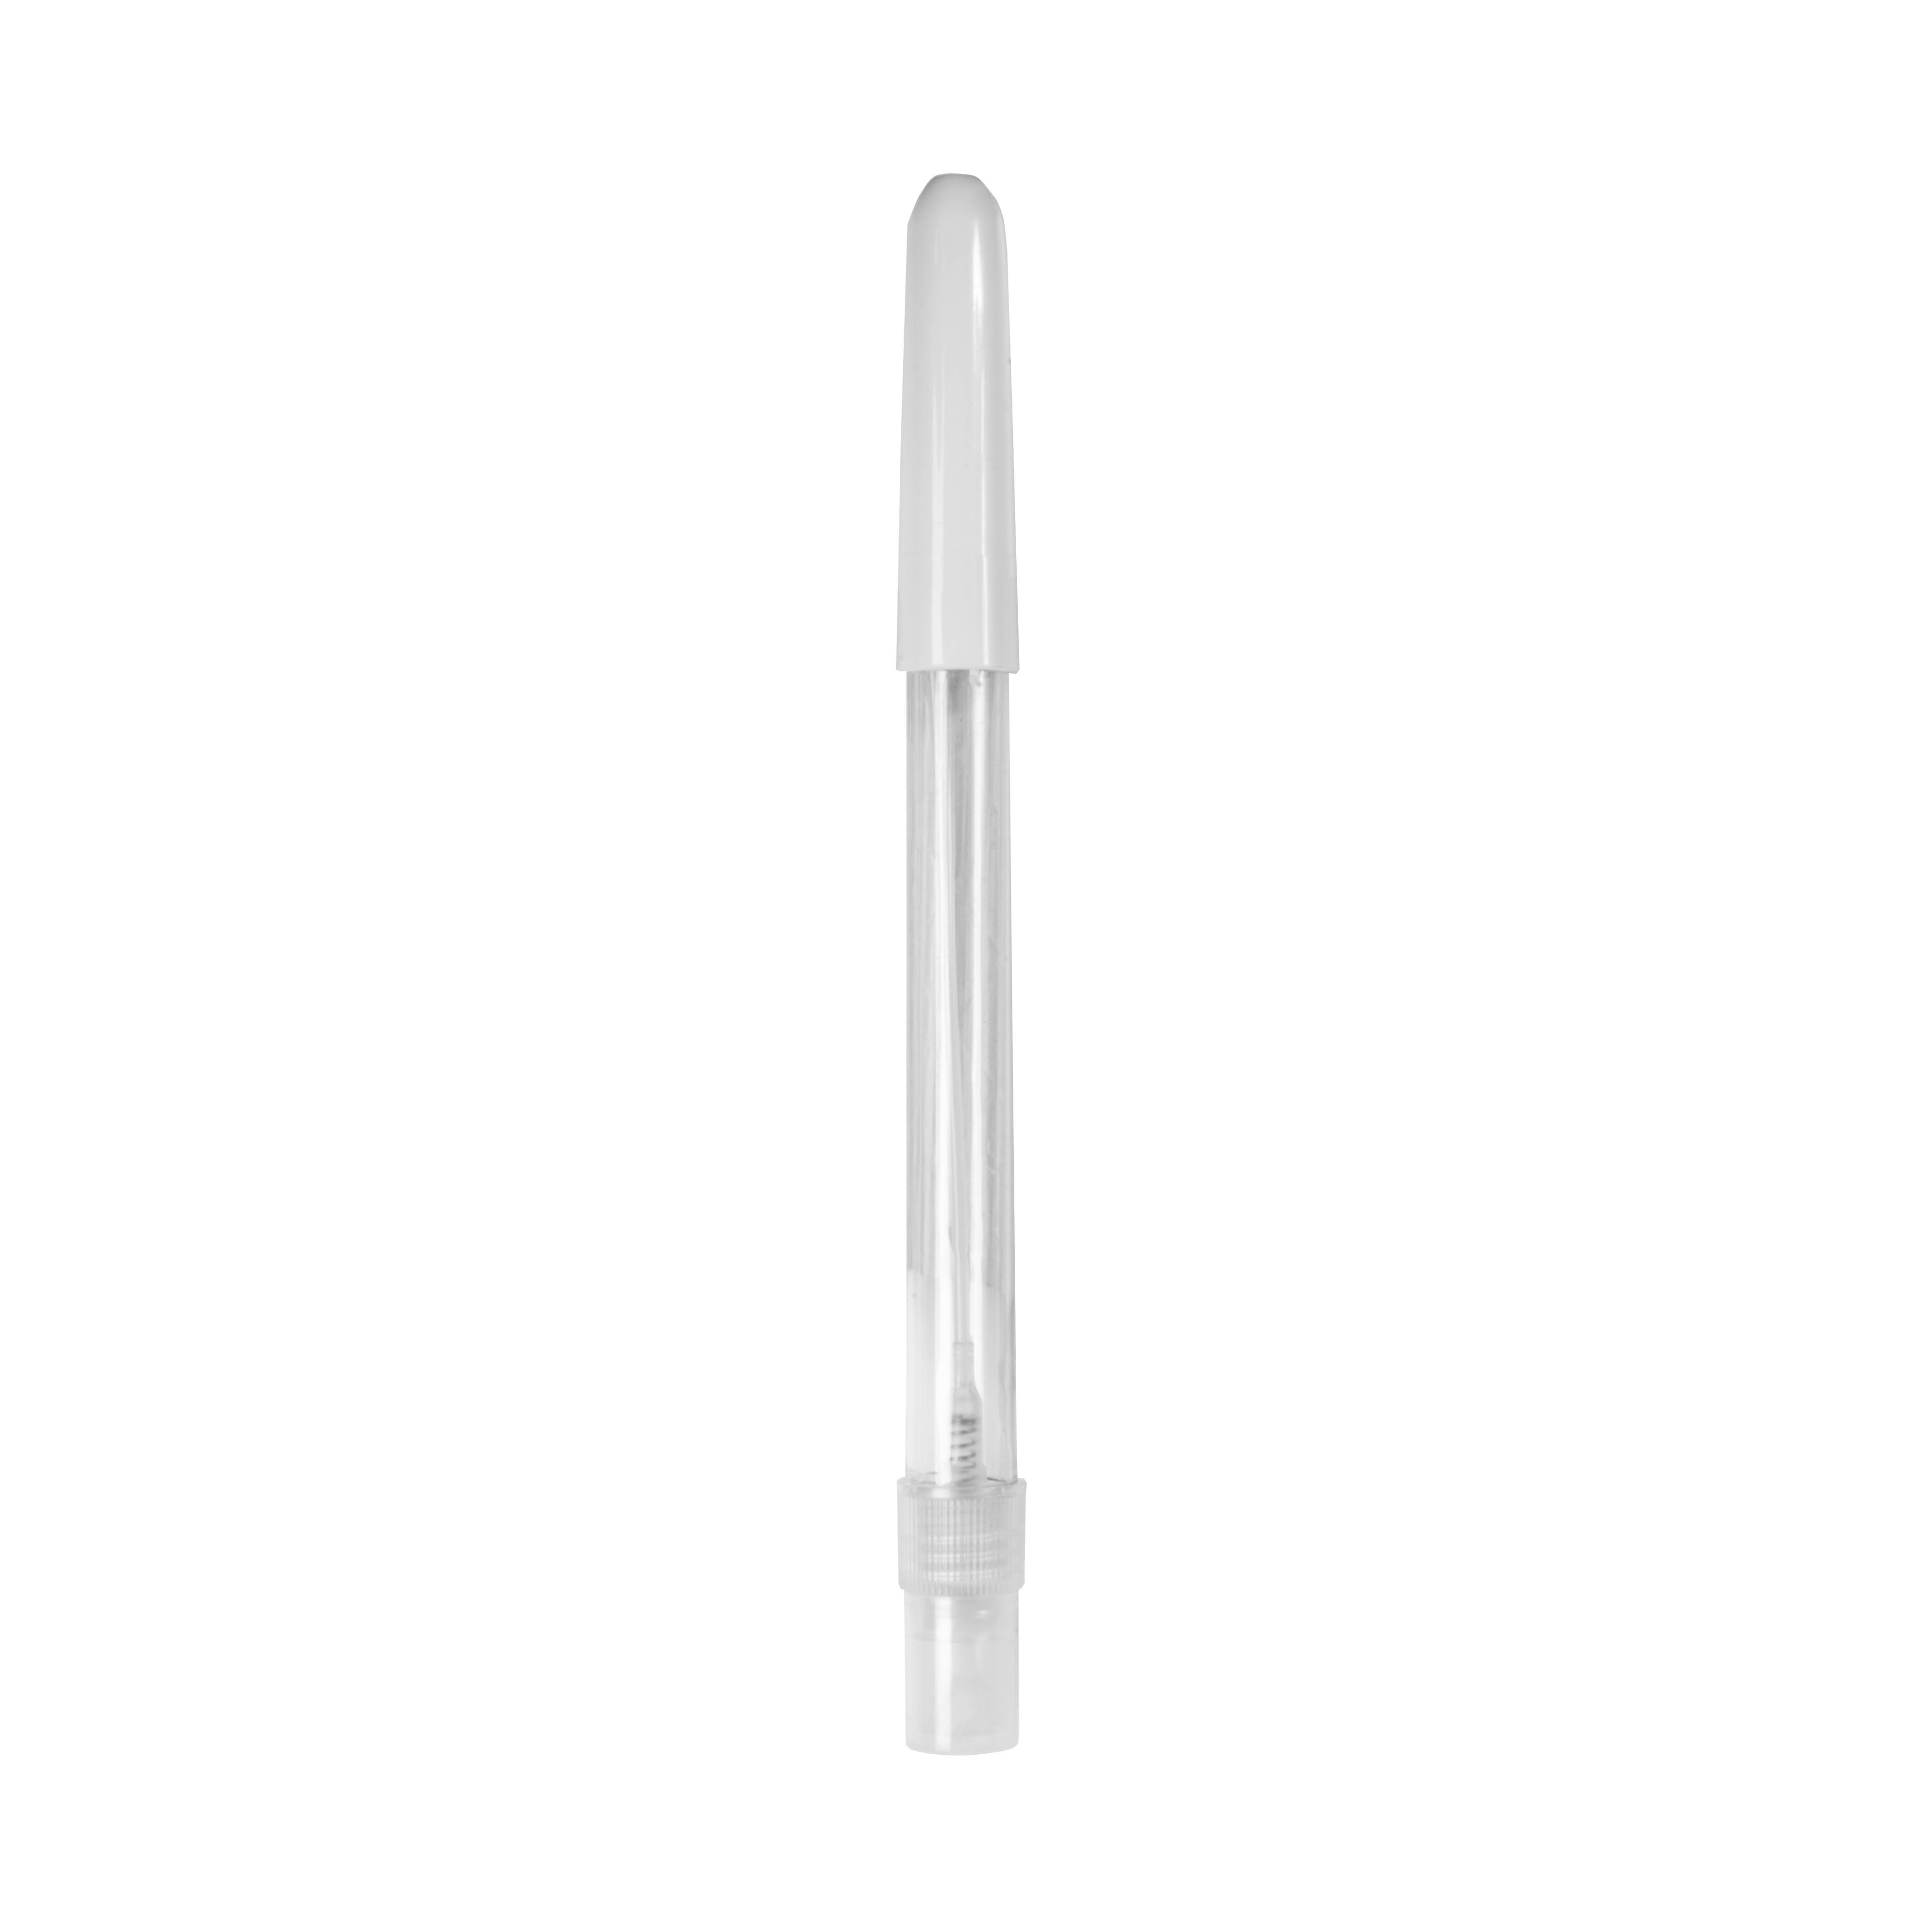 Penna a sfera in resistente plastica ABS con erogatore spray da 10 ml riempibile (liquido non incluso)